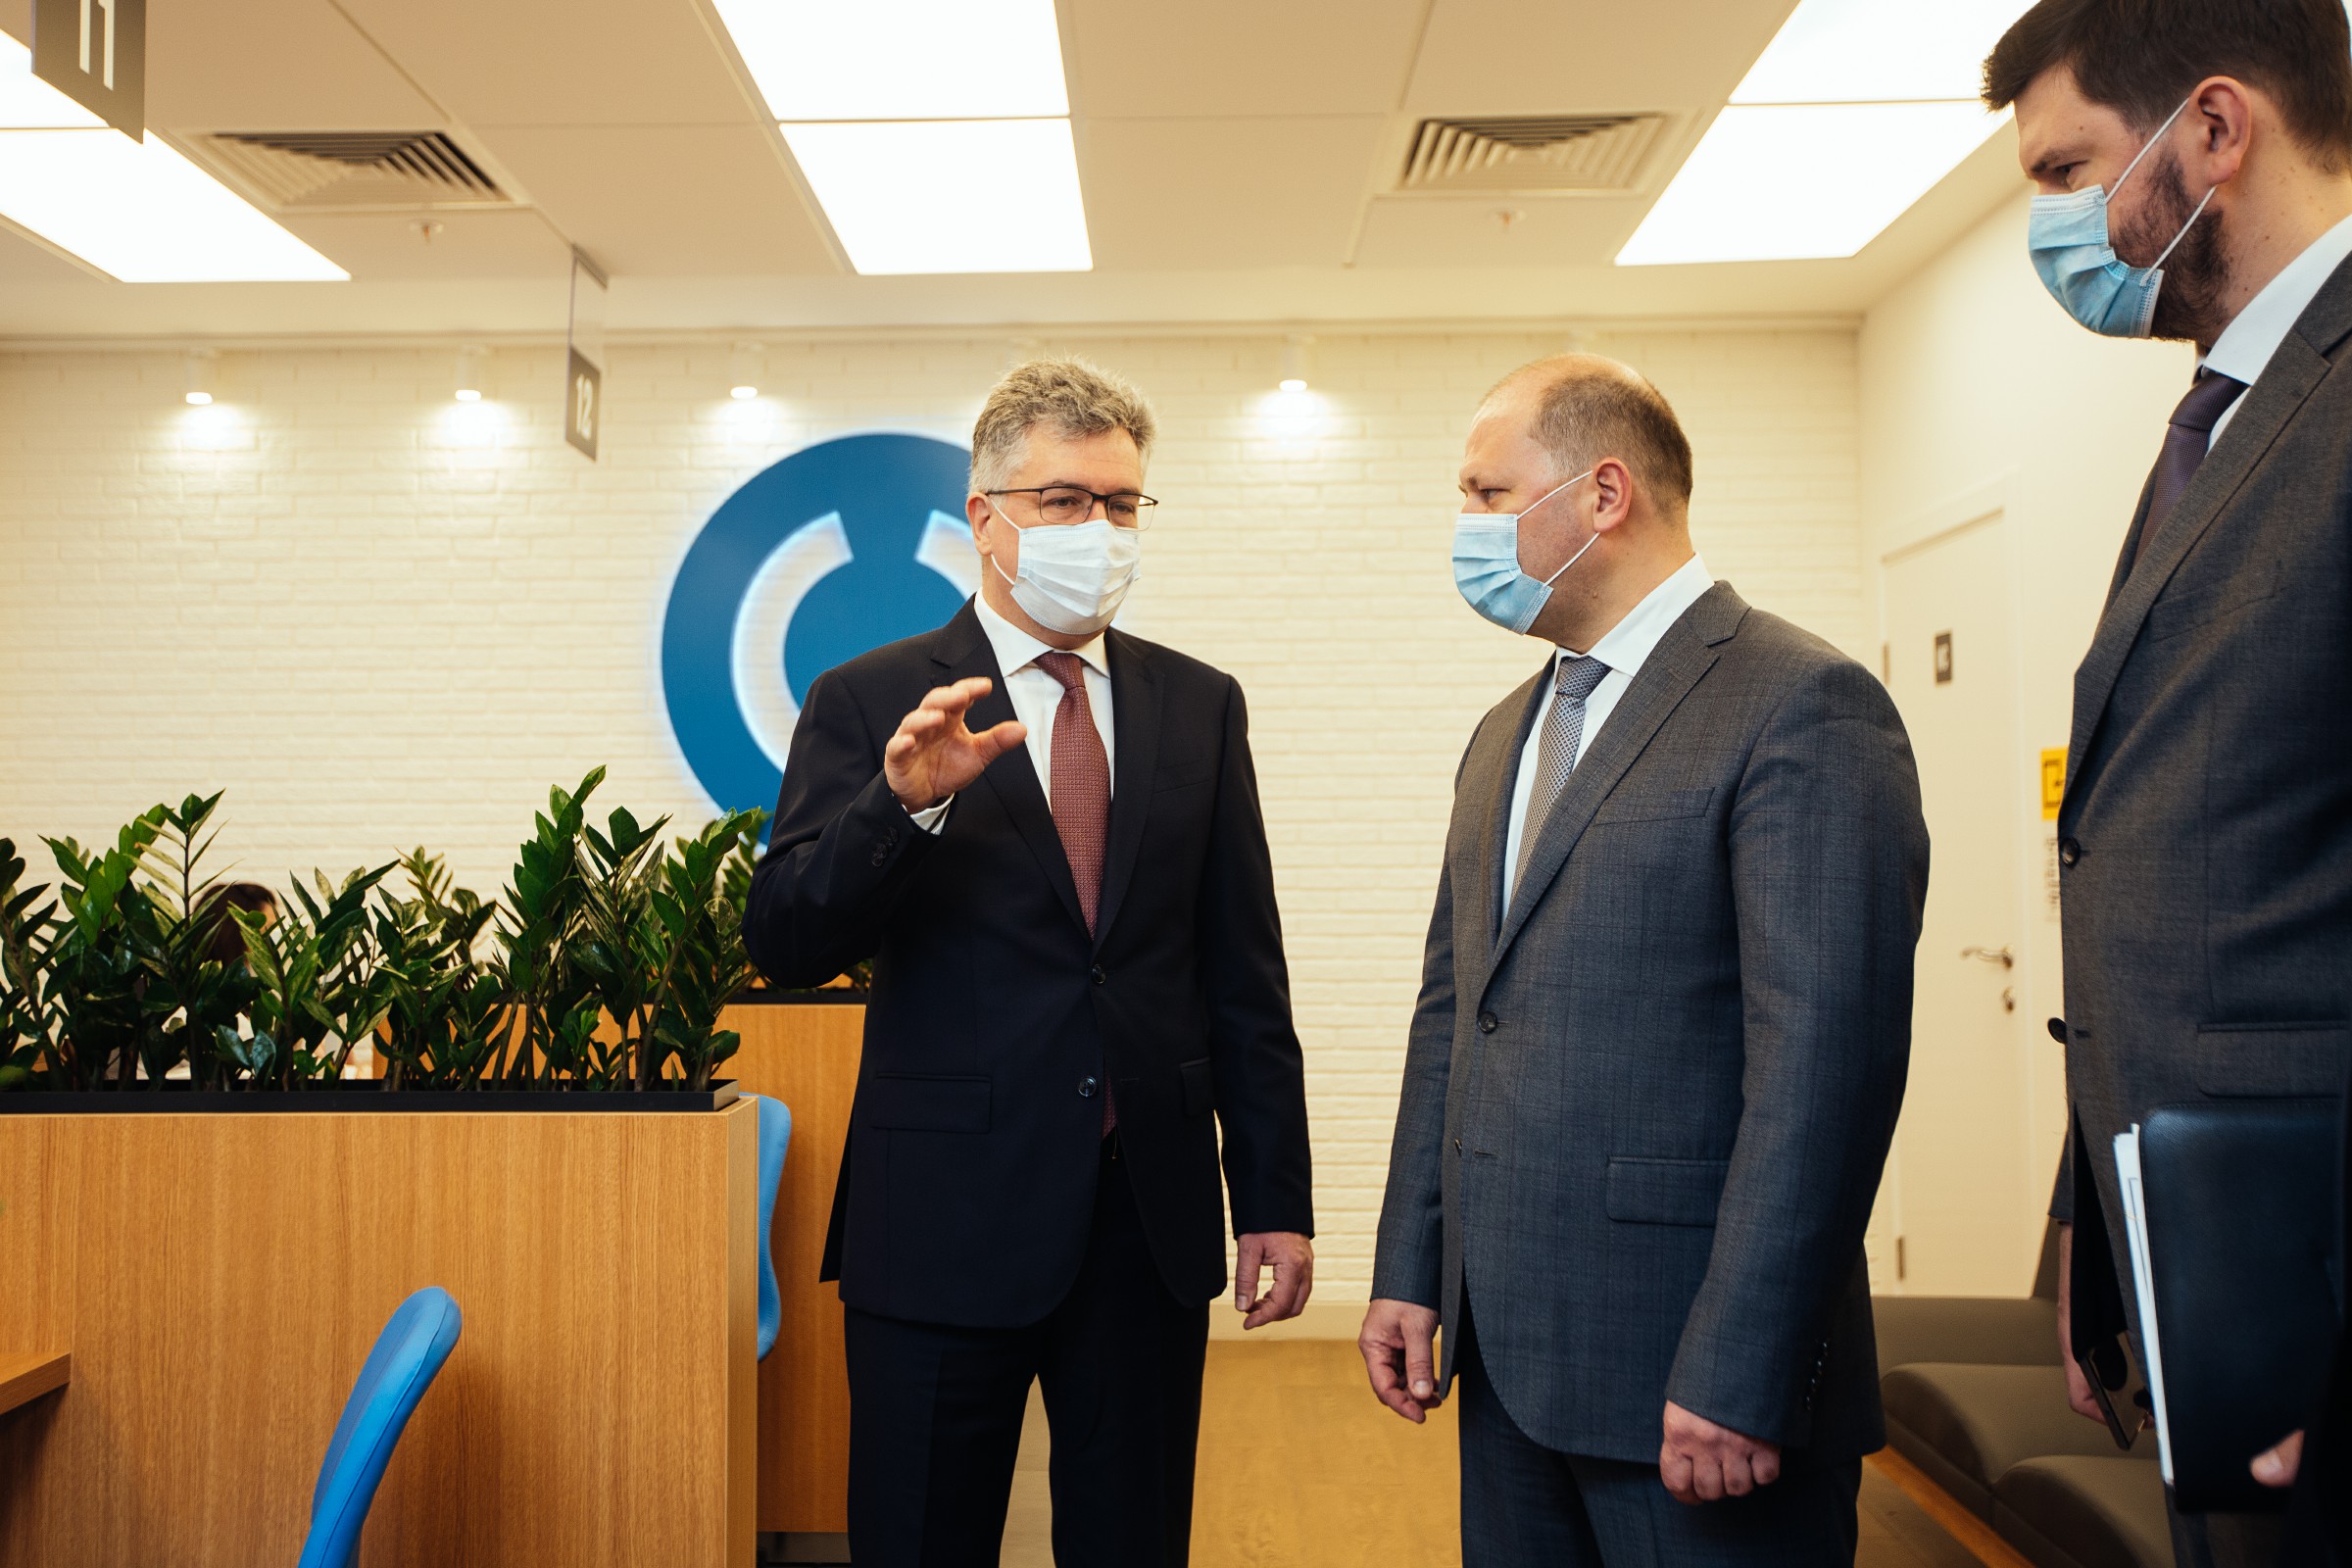 Банк «Открытие» представил в Ростове обновленный флагманский офис